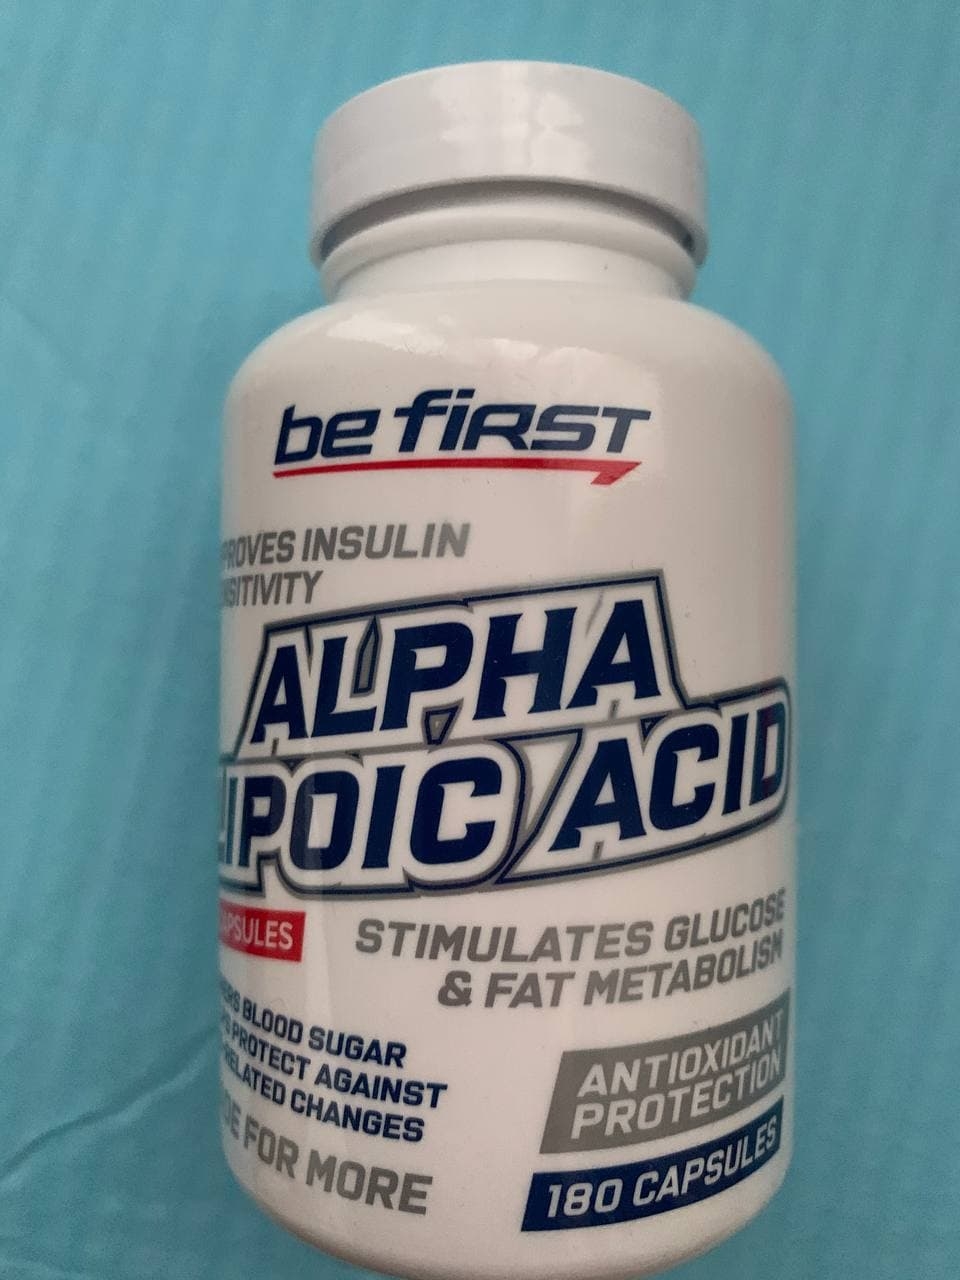 Be First Alpha Lipoic Acid (альфа-липоевая кислота) 180 капсул - Улучшает общее состояние